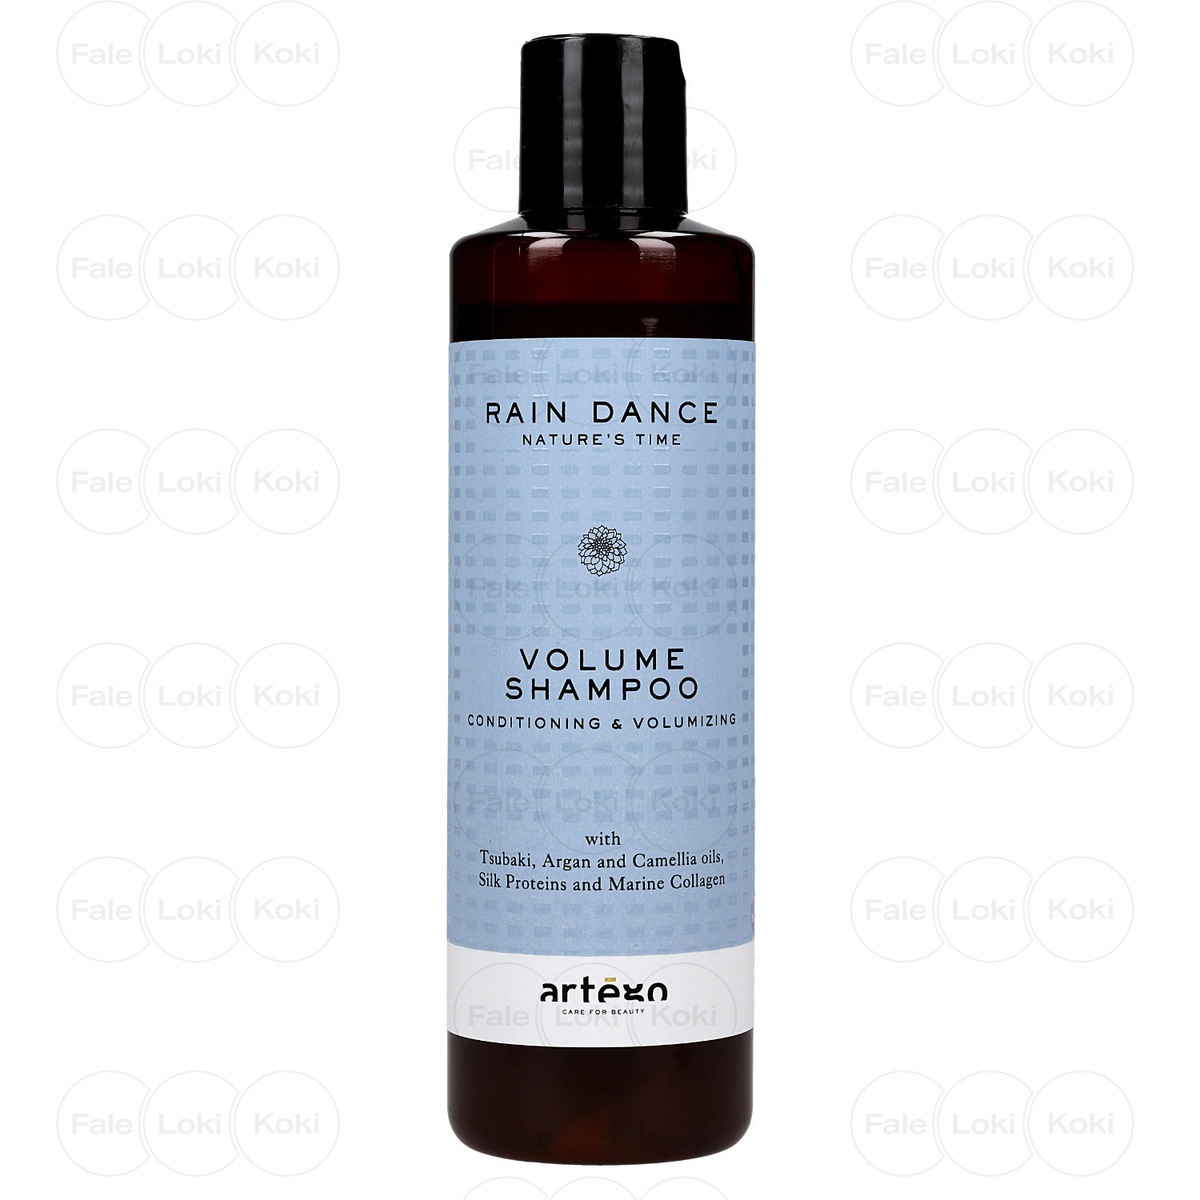 ARTEGO RAIN DANCE szampon do włosów Volume Shampoo 250 ml